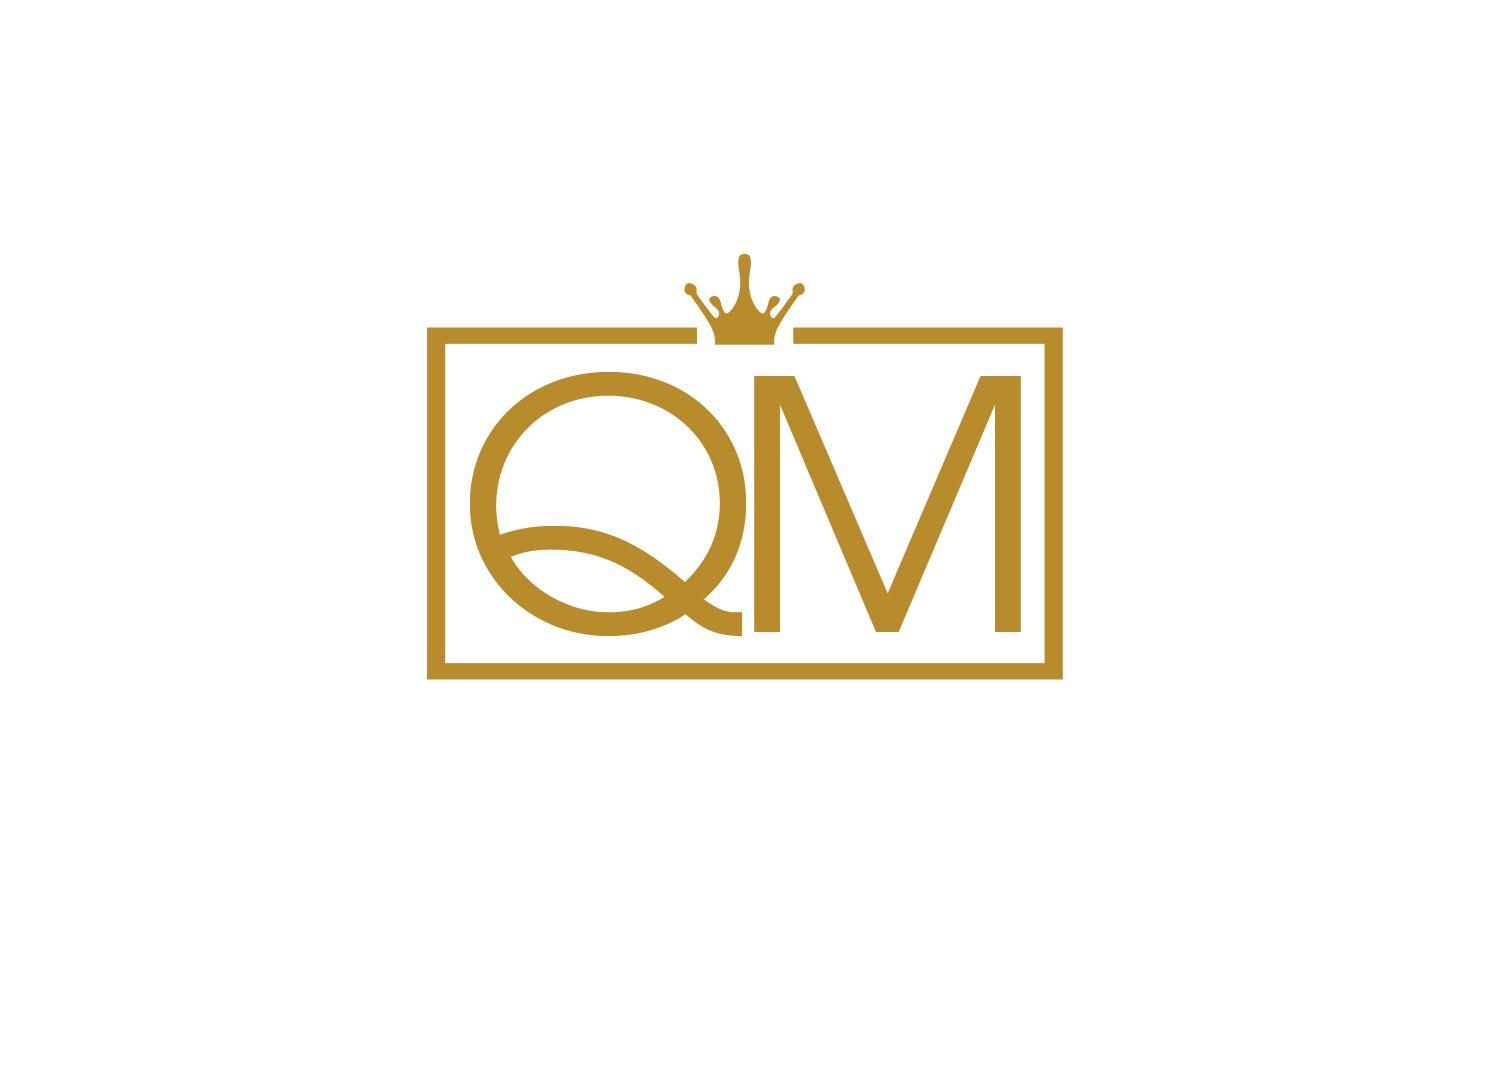 QM Logo - Feminine, Elegant, Cosmetics Logo Design for Q M